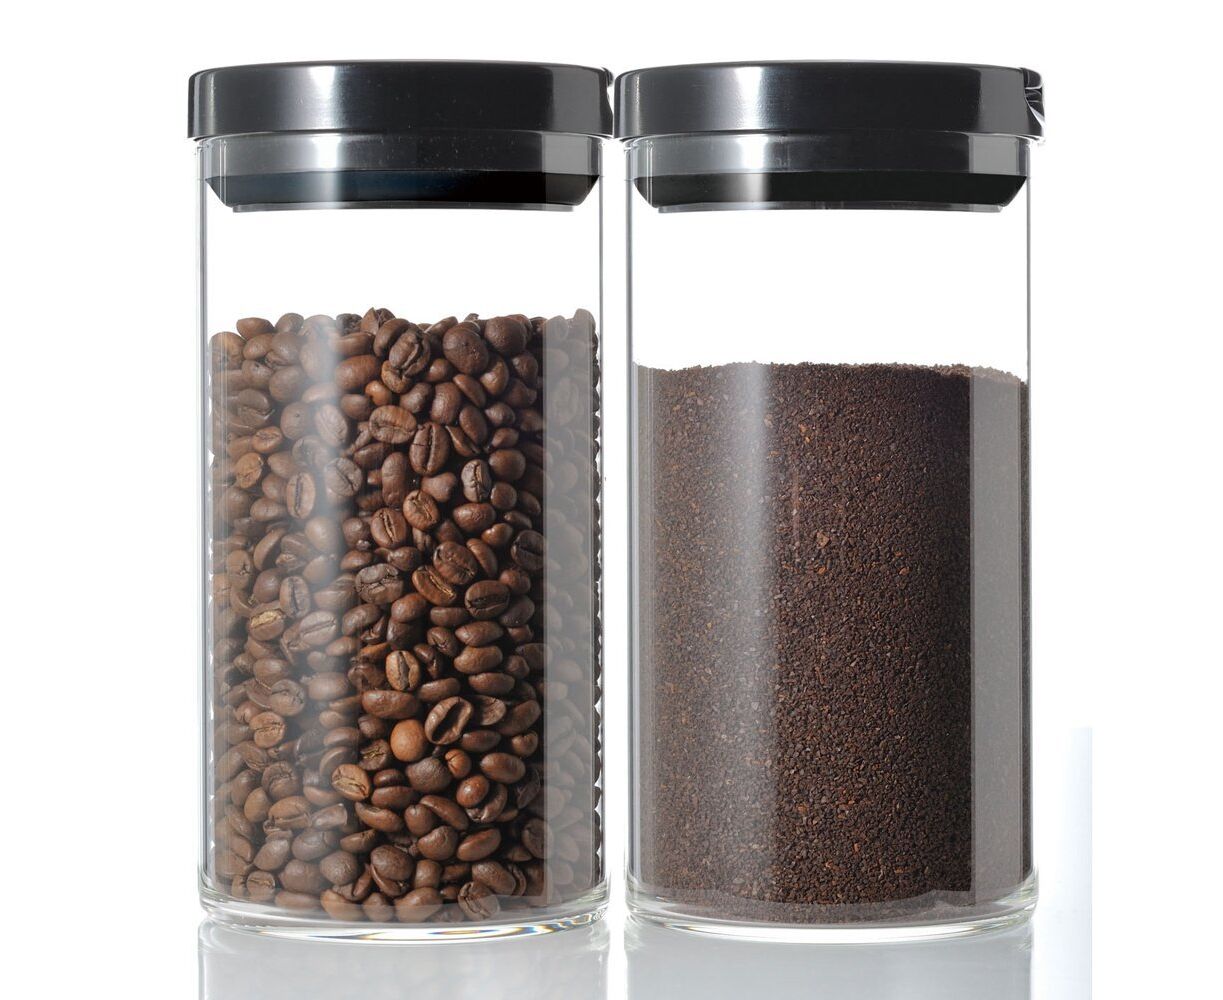 Баночка для кофе. Ёмкость для хранения кофе в зернах. Баночка для хранения кофе. Контейнер для зернового кофе. Банка для хранения кофе в зернах.